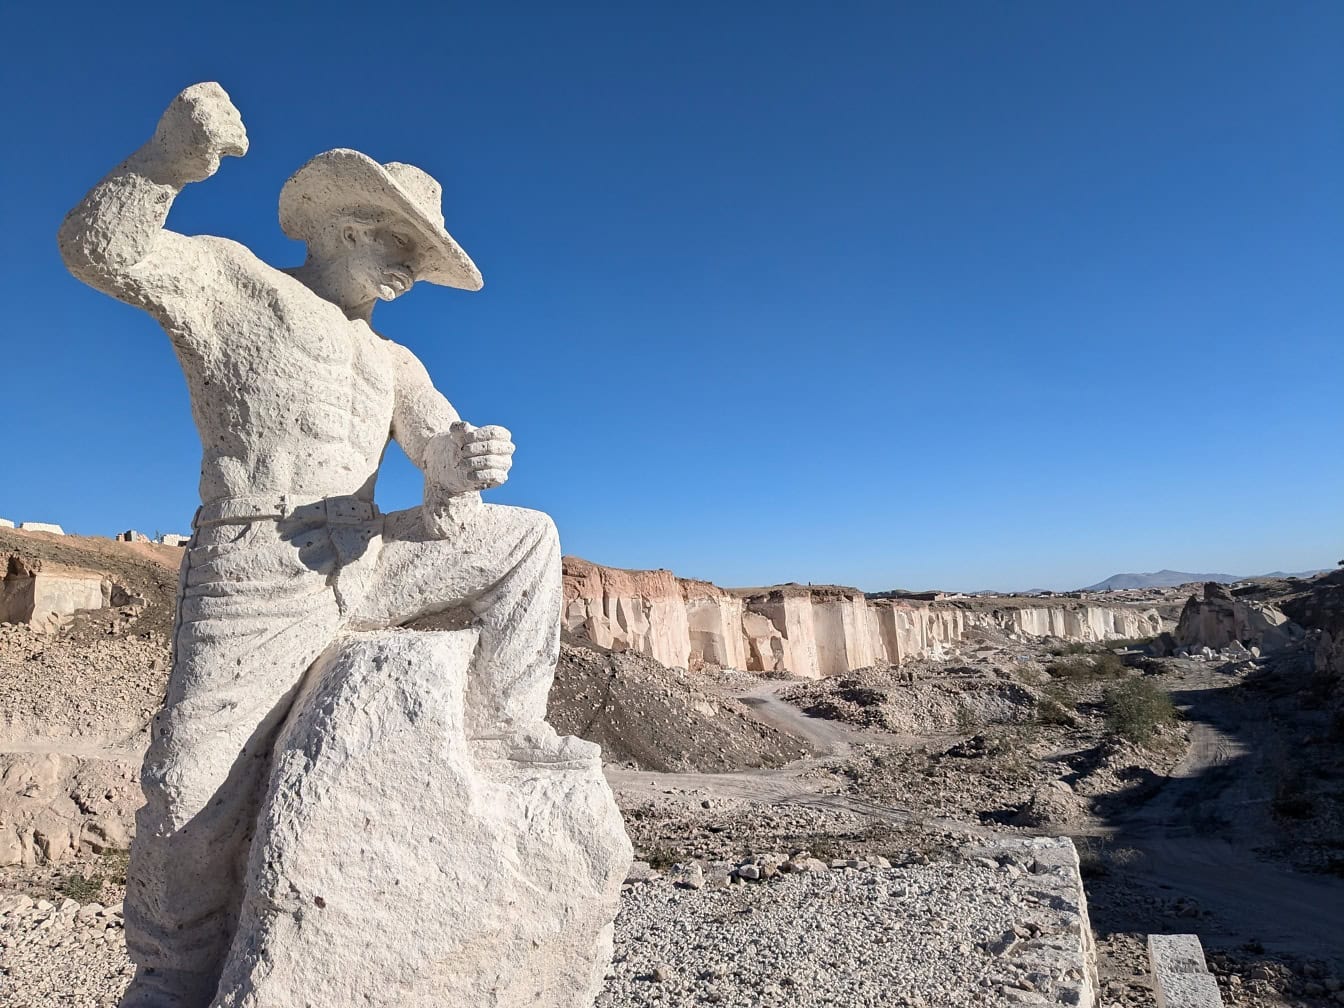 Estátua de um cowboy com chapéu em um deserto na rota Sillar perto do cânion Culebrillas em Arequipa, no Peru